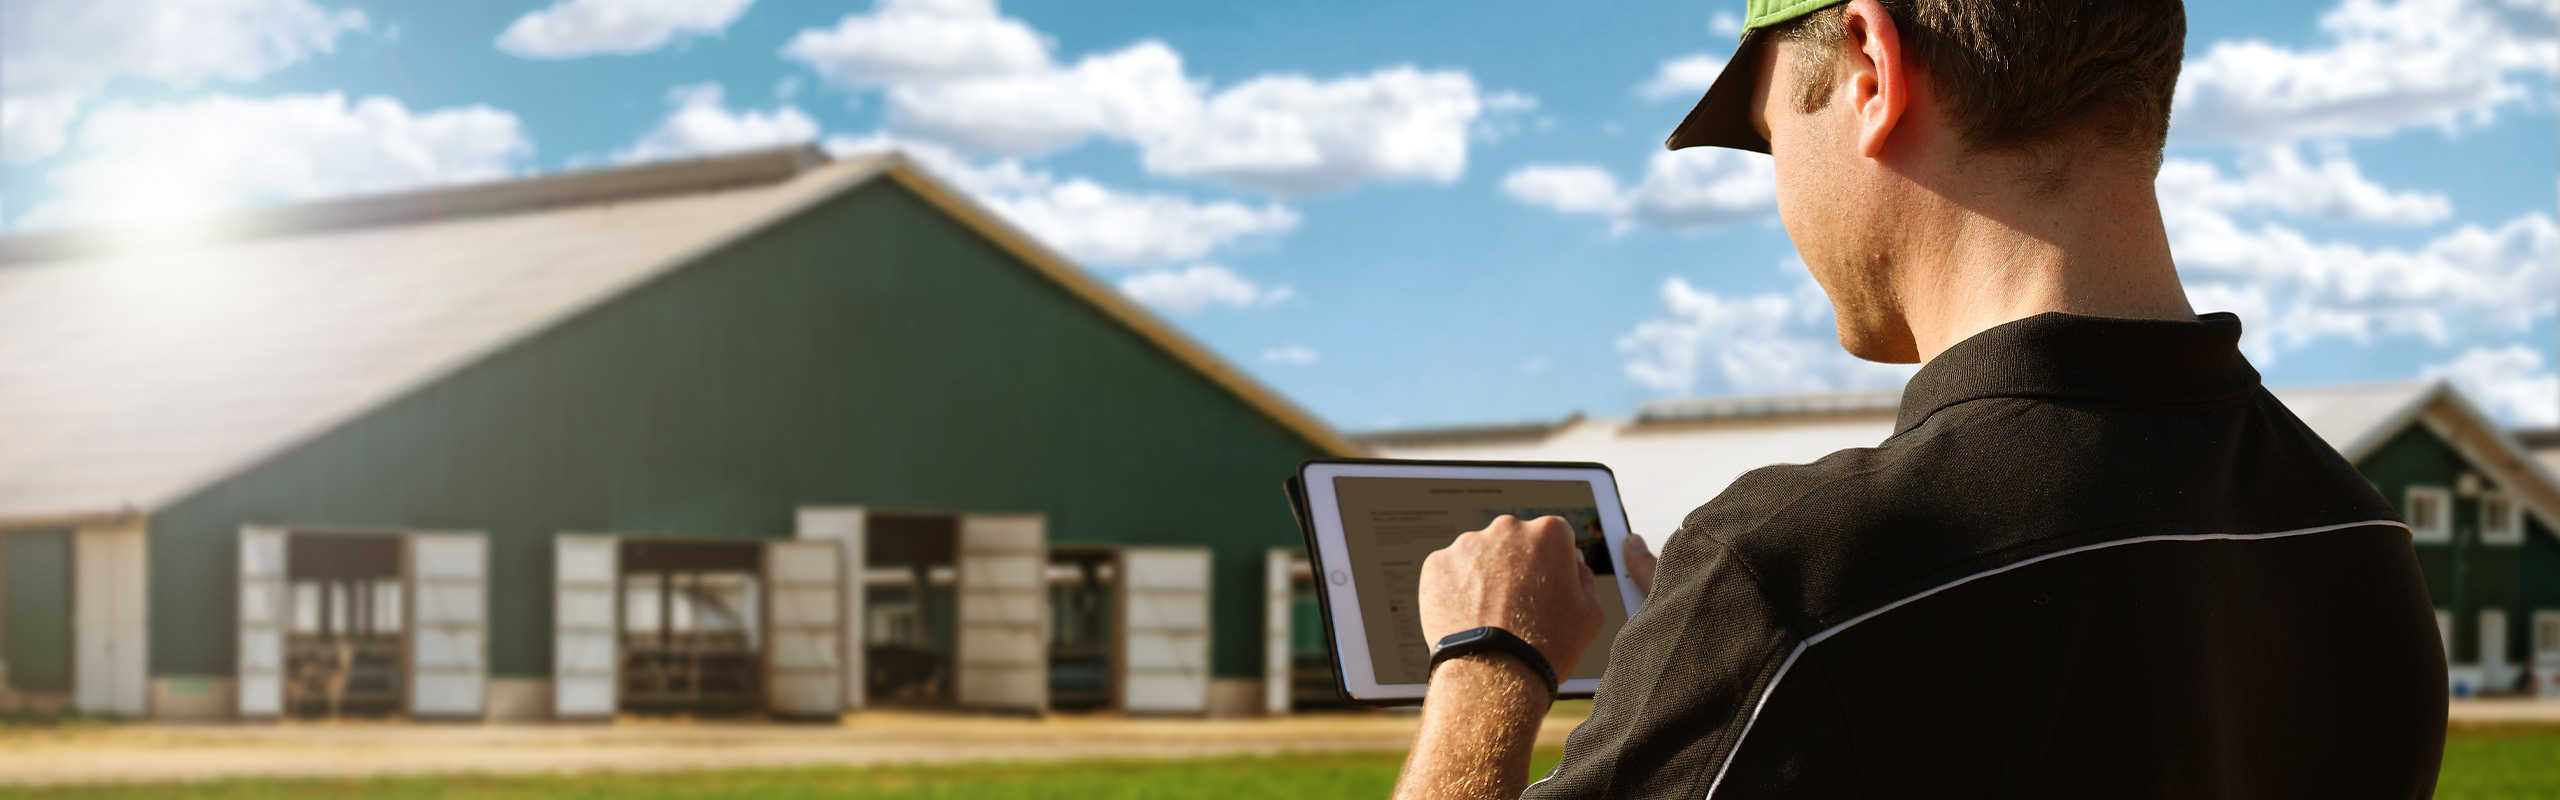 Un agricultor con una tablet se encuentra frente a su explotación y se suscribe a la Newsletter